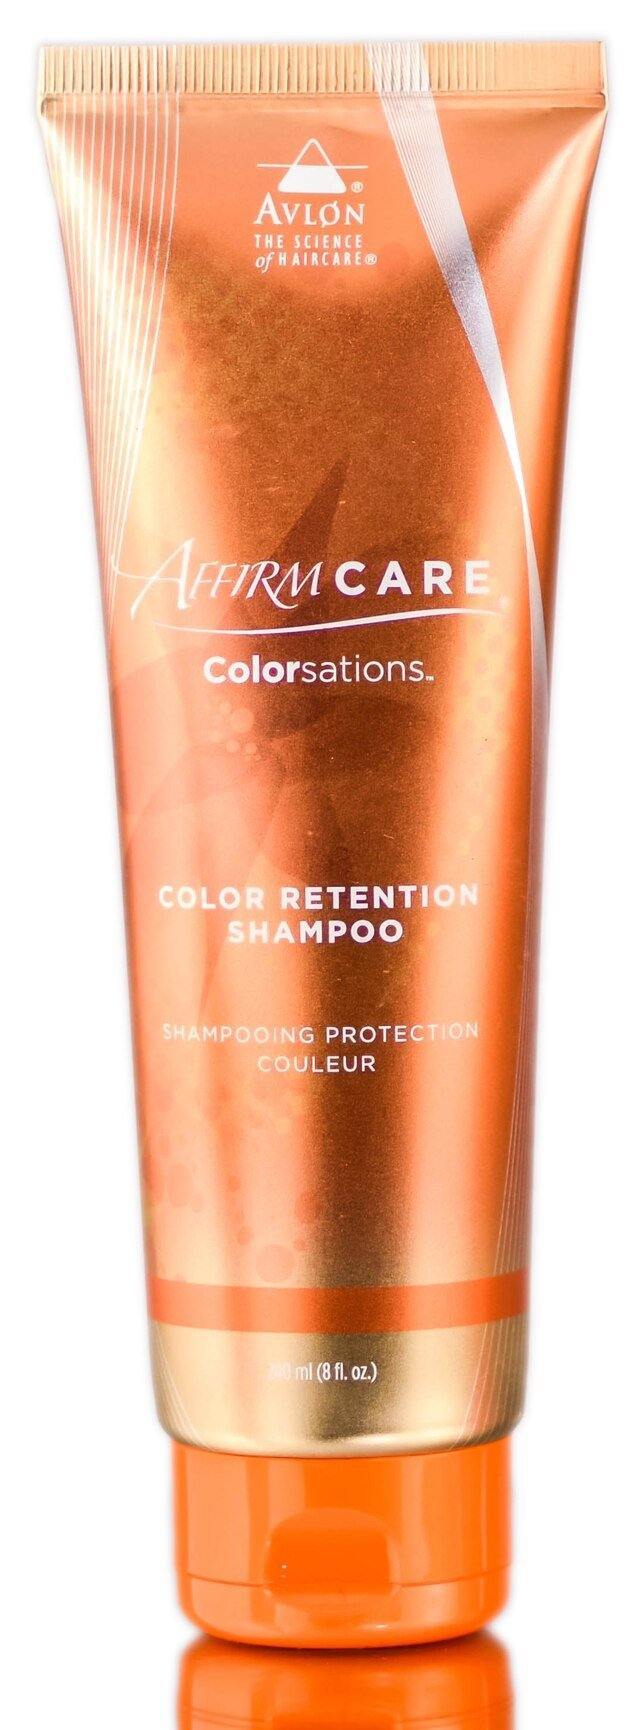 AffirmCare Colorsations Color Retention Shampoo - Saber Professional